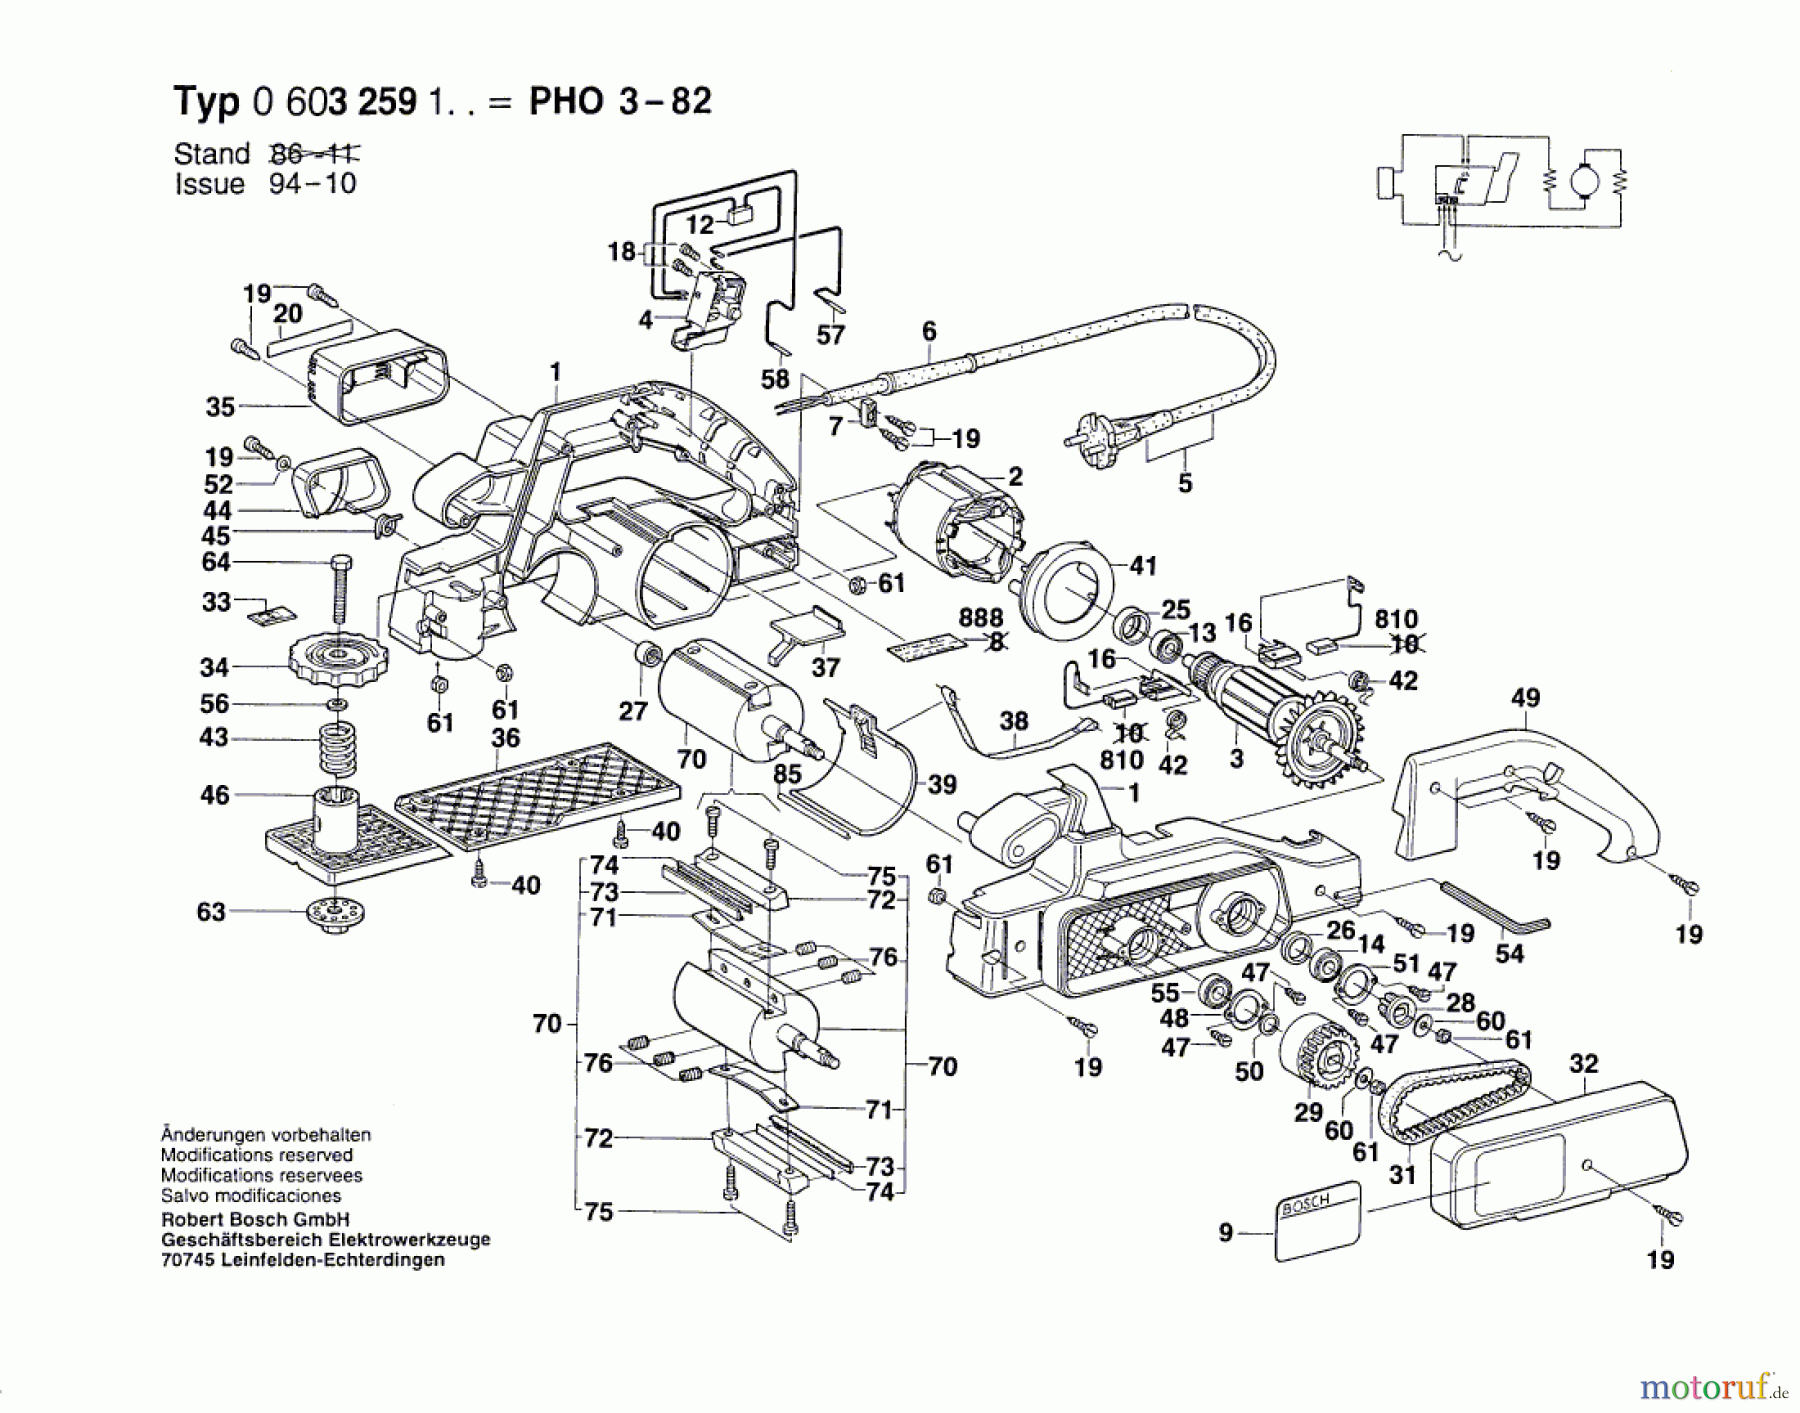  Bosch Werkzeug Handhobel PHO 3-82 Seite 1